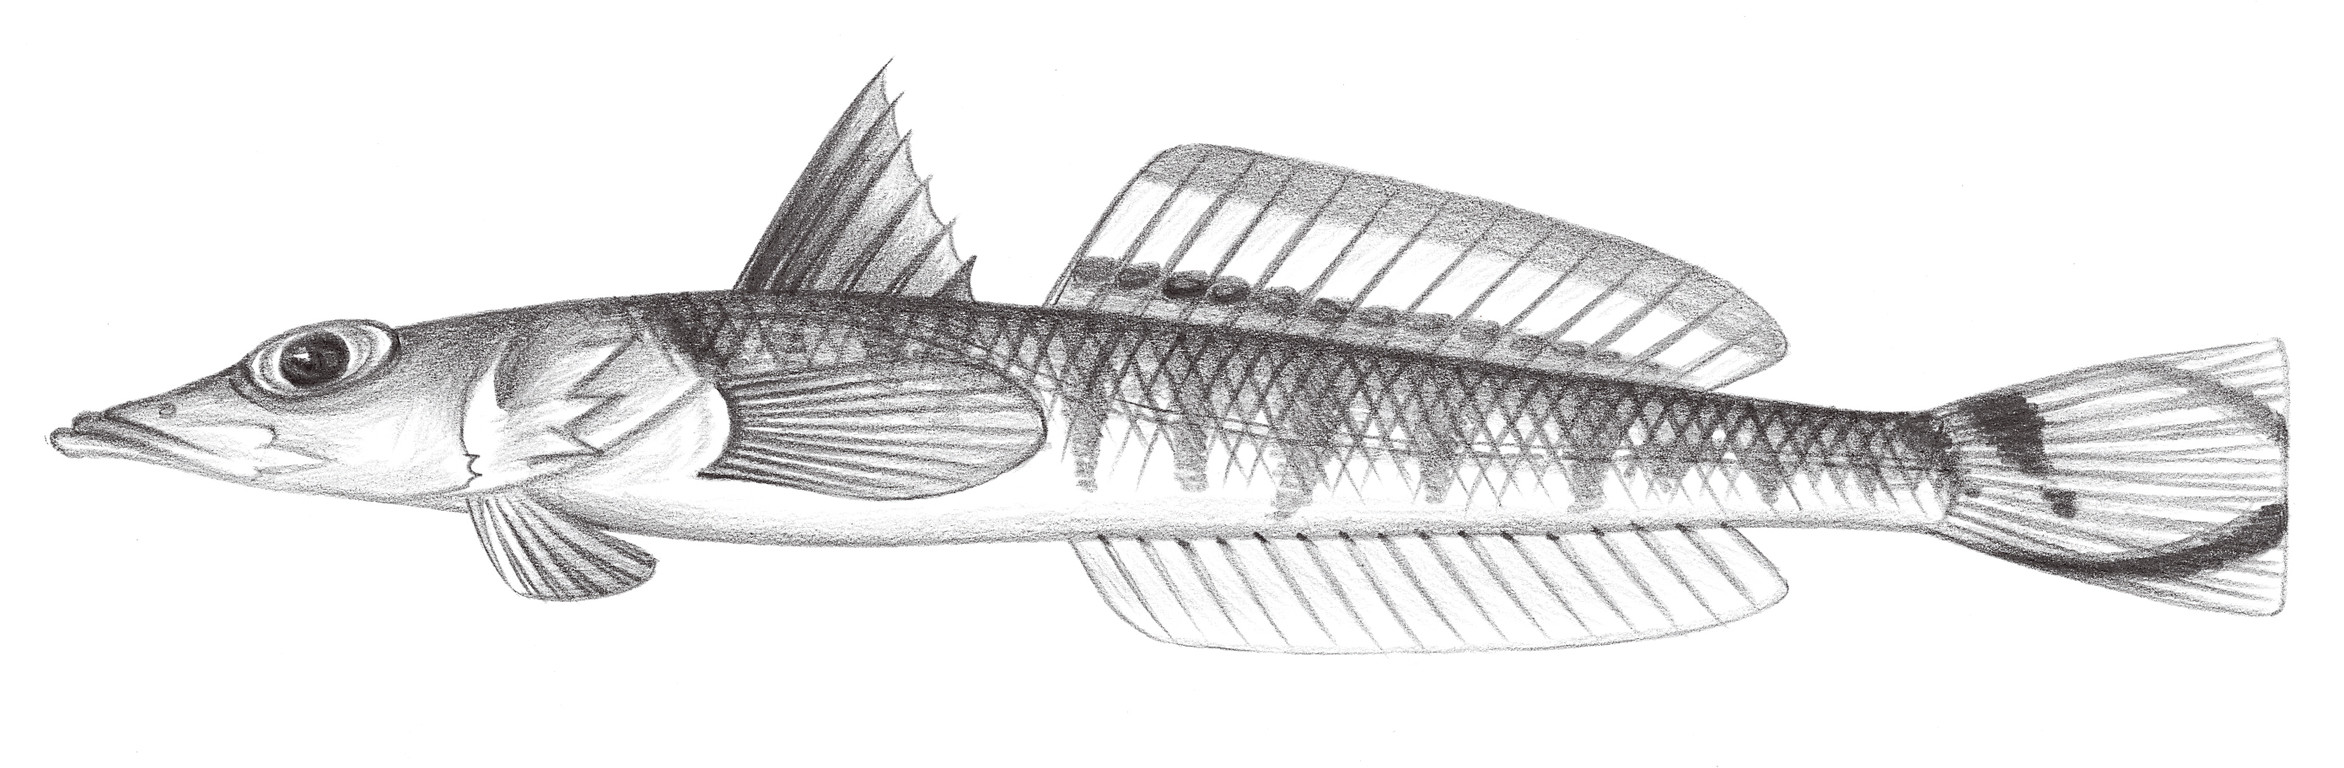 1909.	尾斑鰧狀魚 Bembrops caudimacula Steindachner, 1876